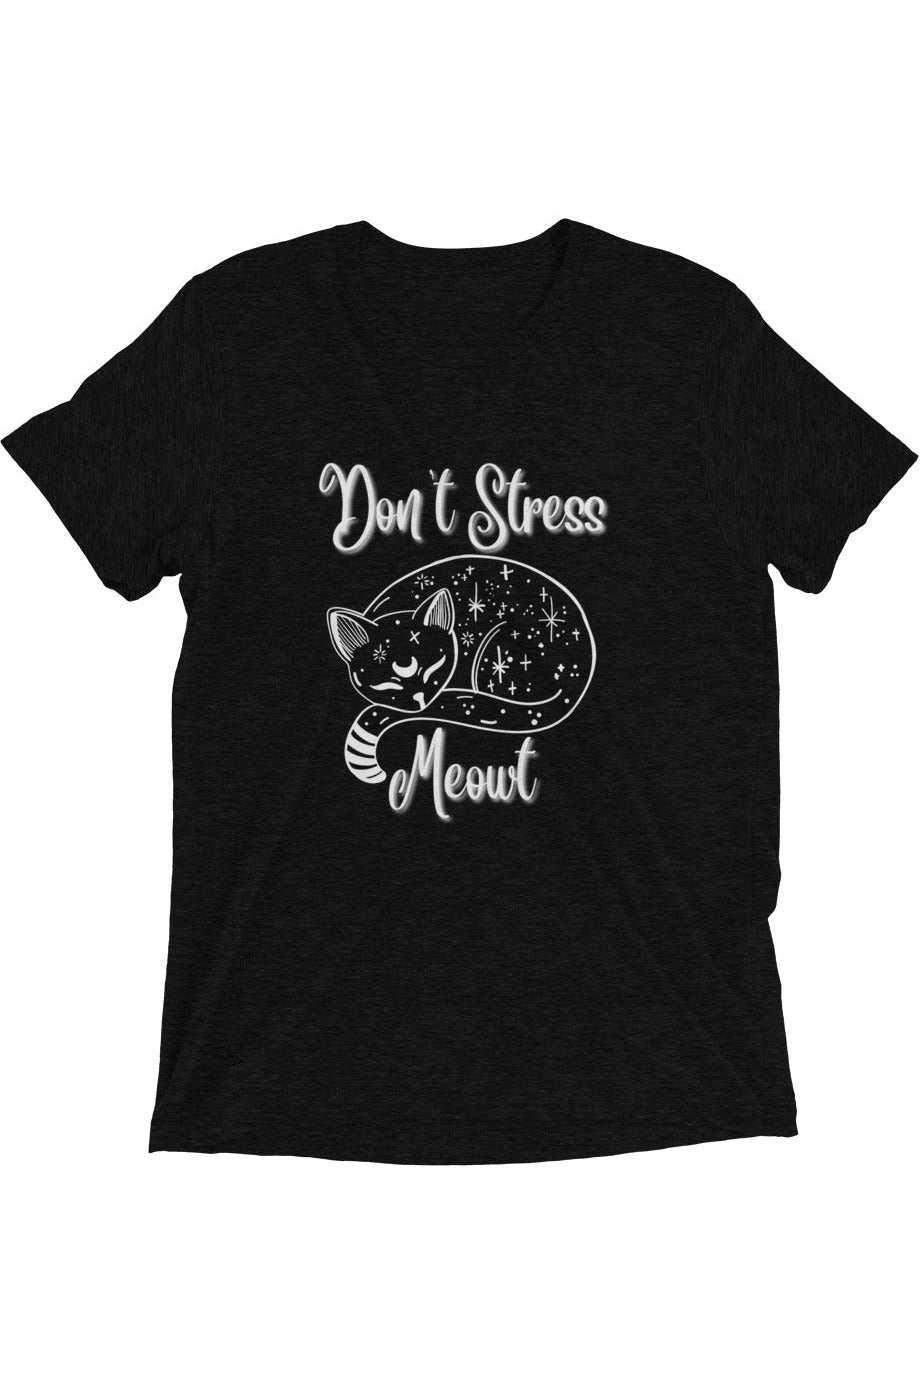 "Don't Stress Meowt" - Short sleeve t-shirt